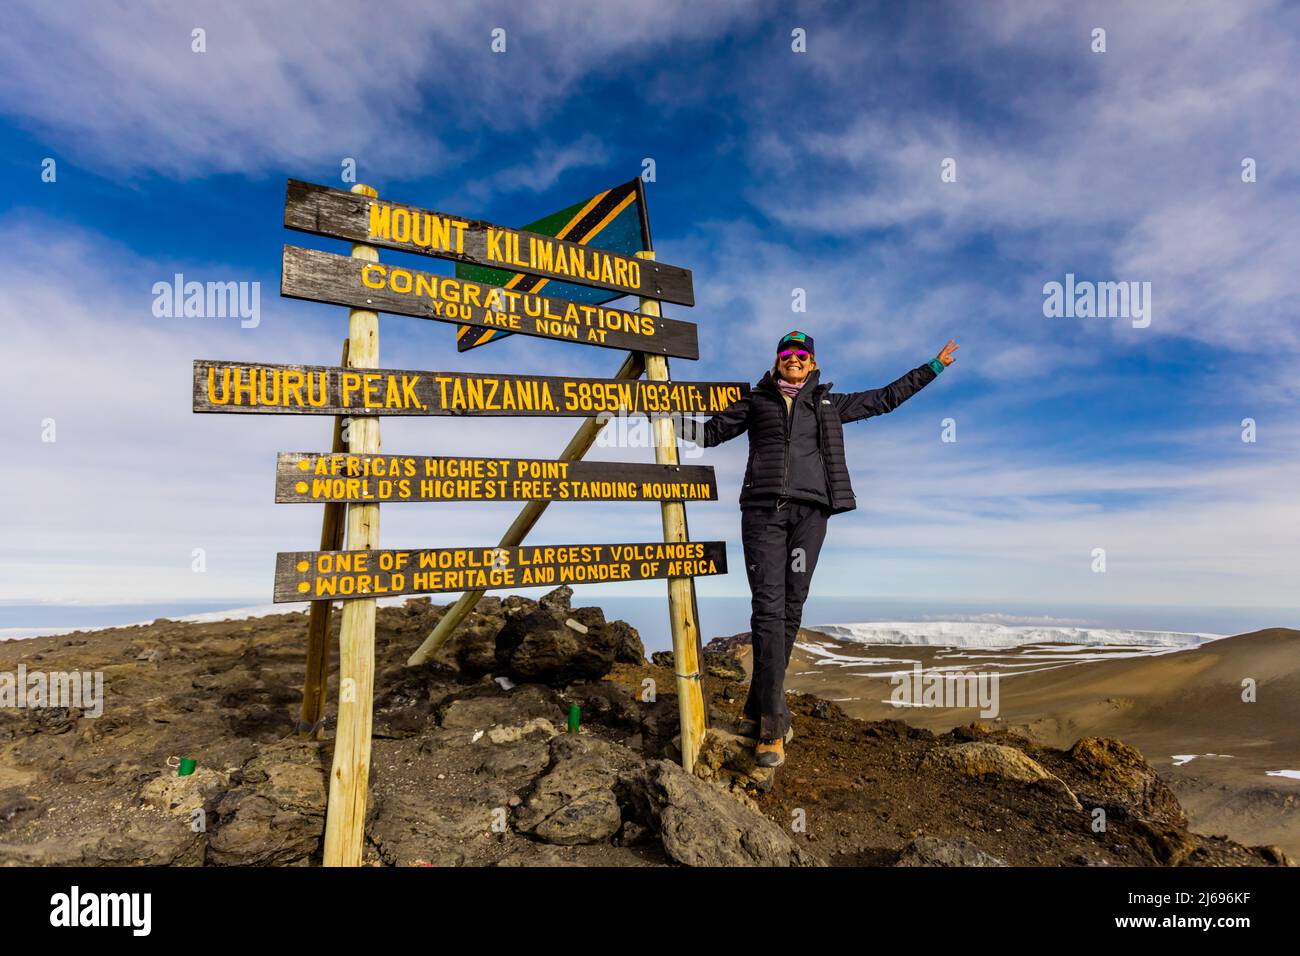 Femme excitée elle l'a fait à Uhuru Peak sur le Mont Kilimanjaro, site du patrimoine mondial de l'UNESCO, Tanzanie, Afrique de l'est, Afrique Banque D'Images